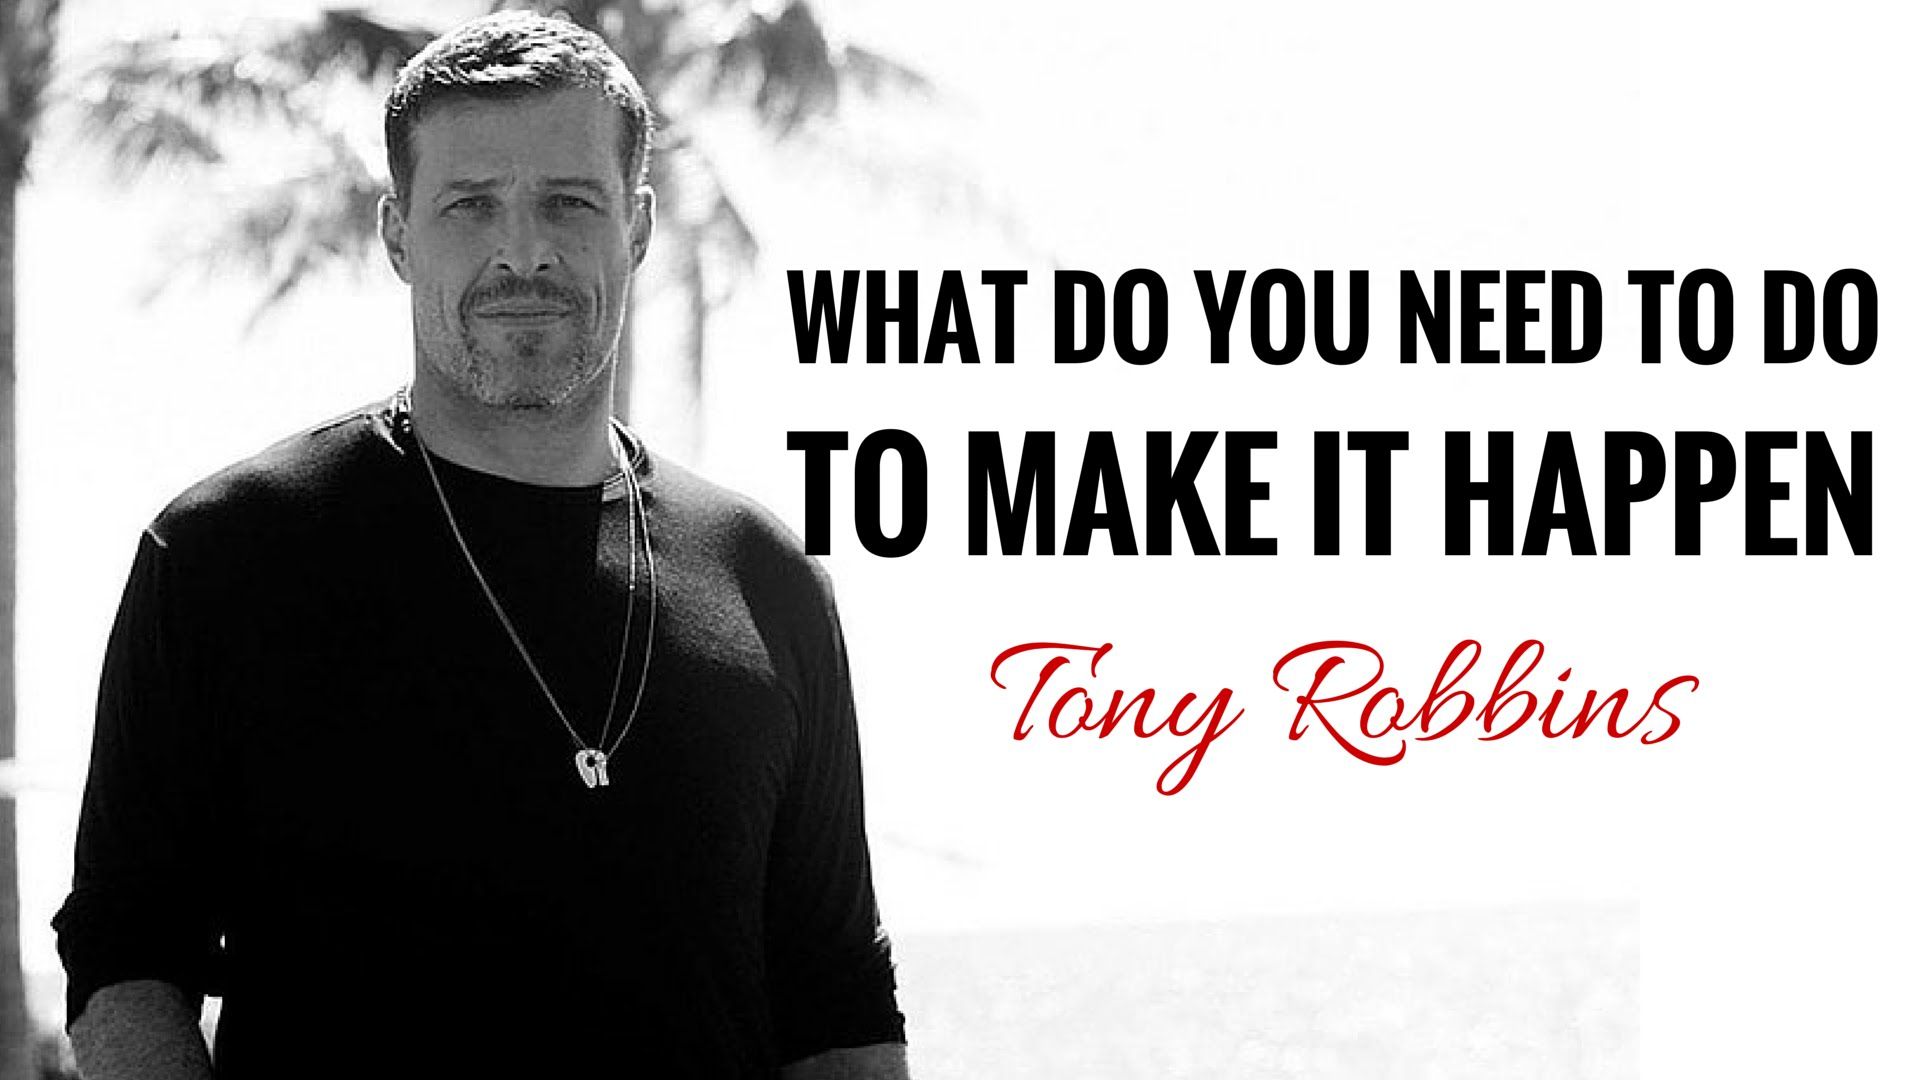 Tony Robbins Do You Need To Do To Make It Happen